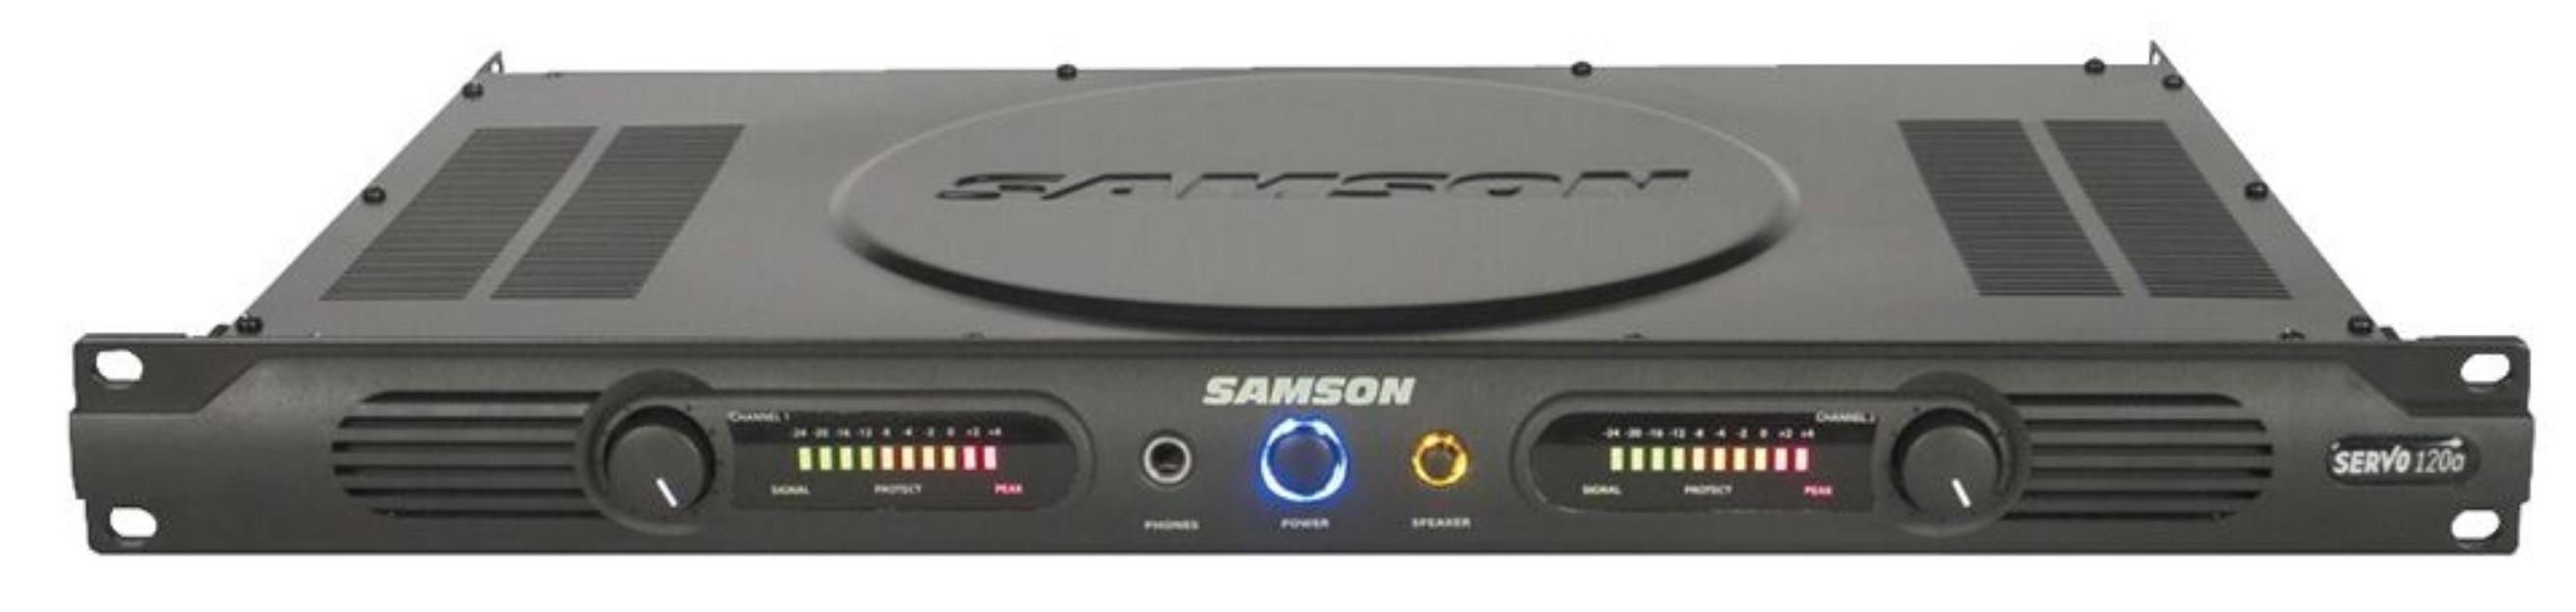 Vendo Monitores de Studio & Ampli  específico para ellos Samson como nuevos